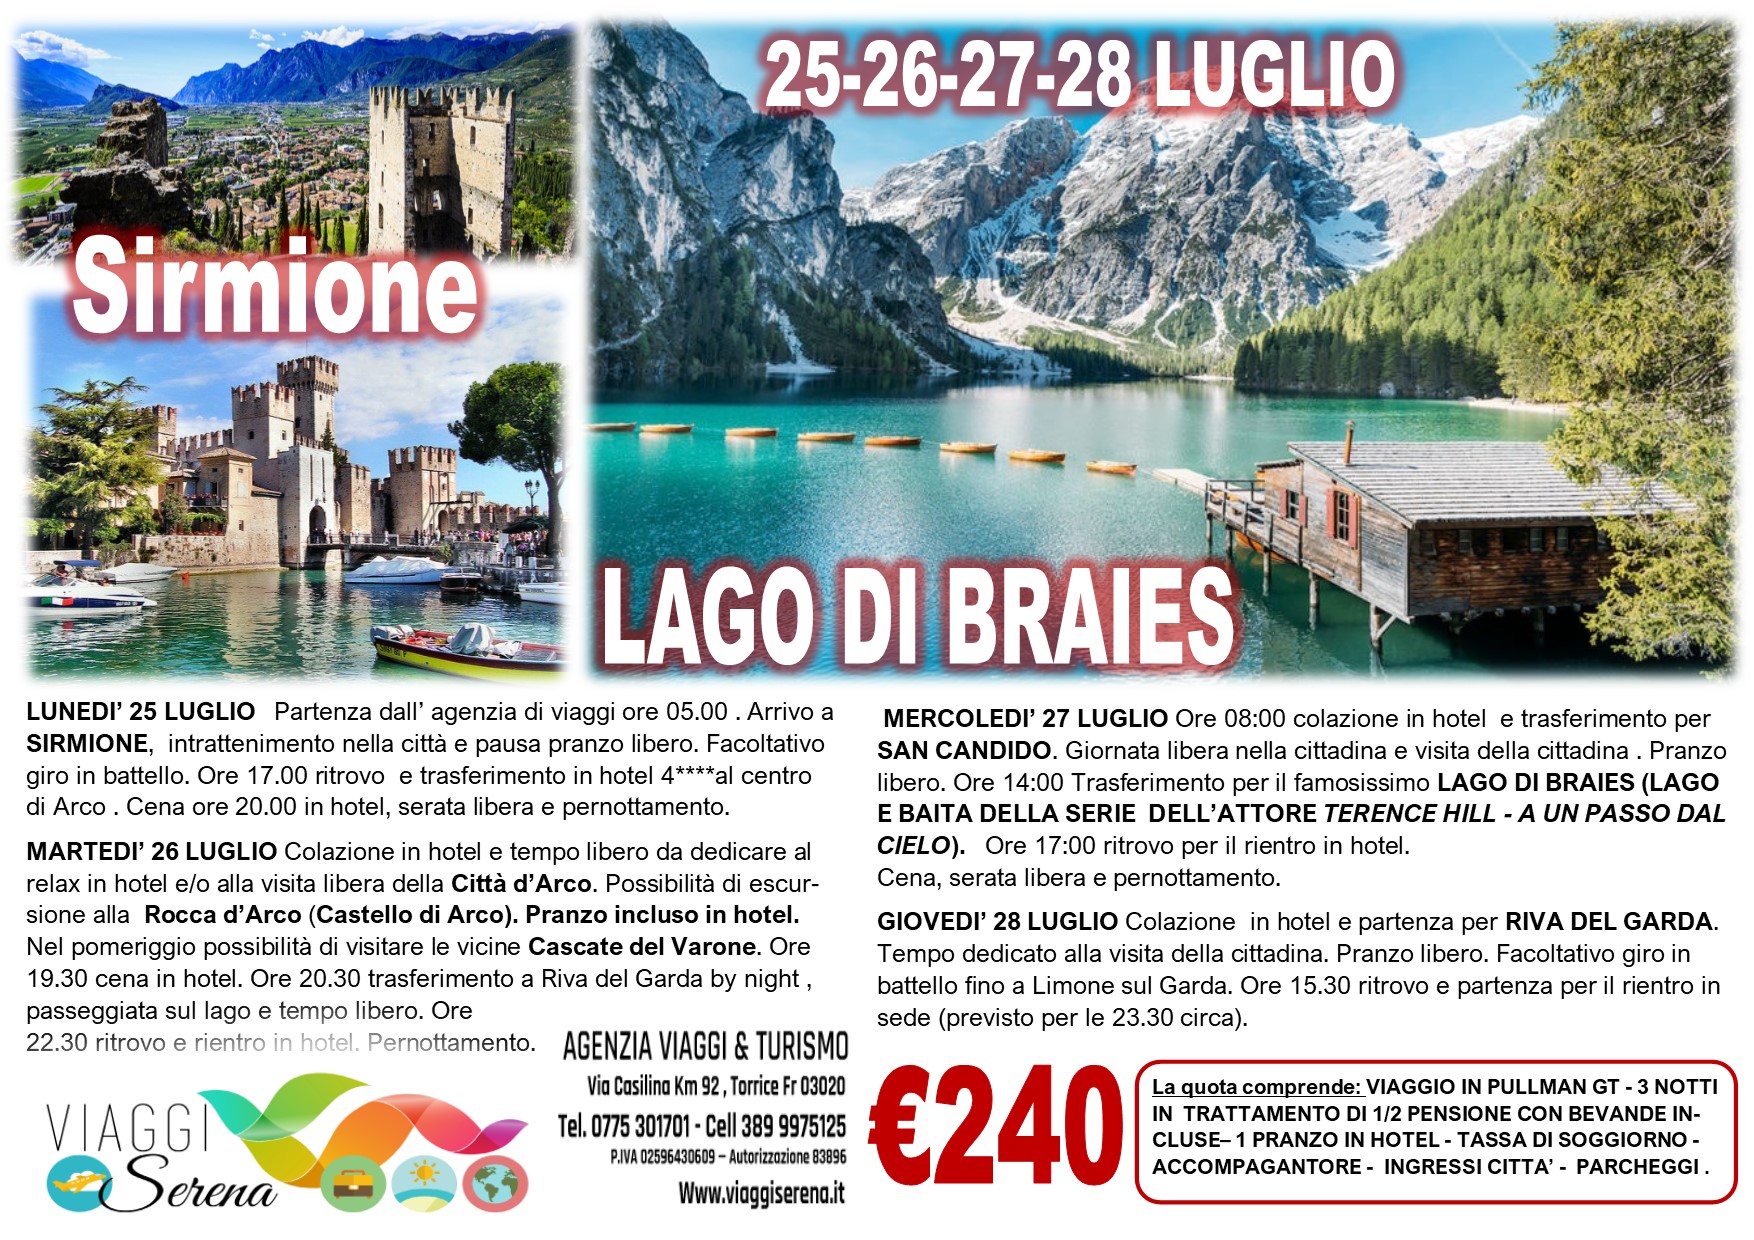 Viaggi di Gruppo: Sirmione, Lago di Braies, Riva del Garda & San Candido 25-26-27-28 Luglio  €240,00